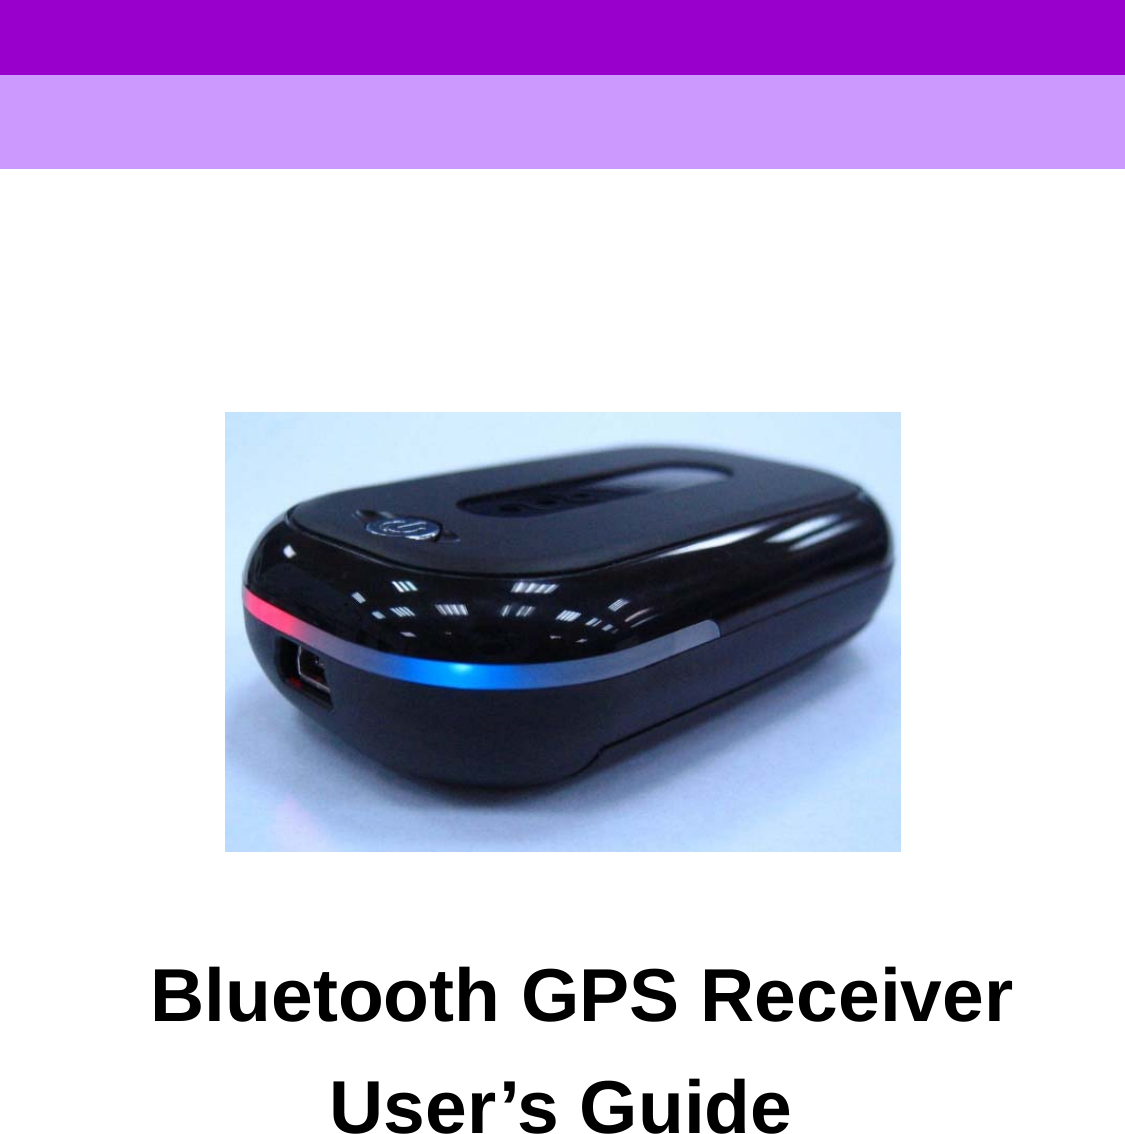      User’s GuideGPS Bluetooth Receiver                      Bluetooth GPS Receiver User’s Guide            